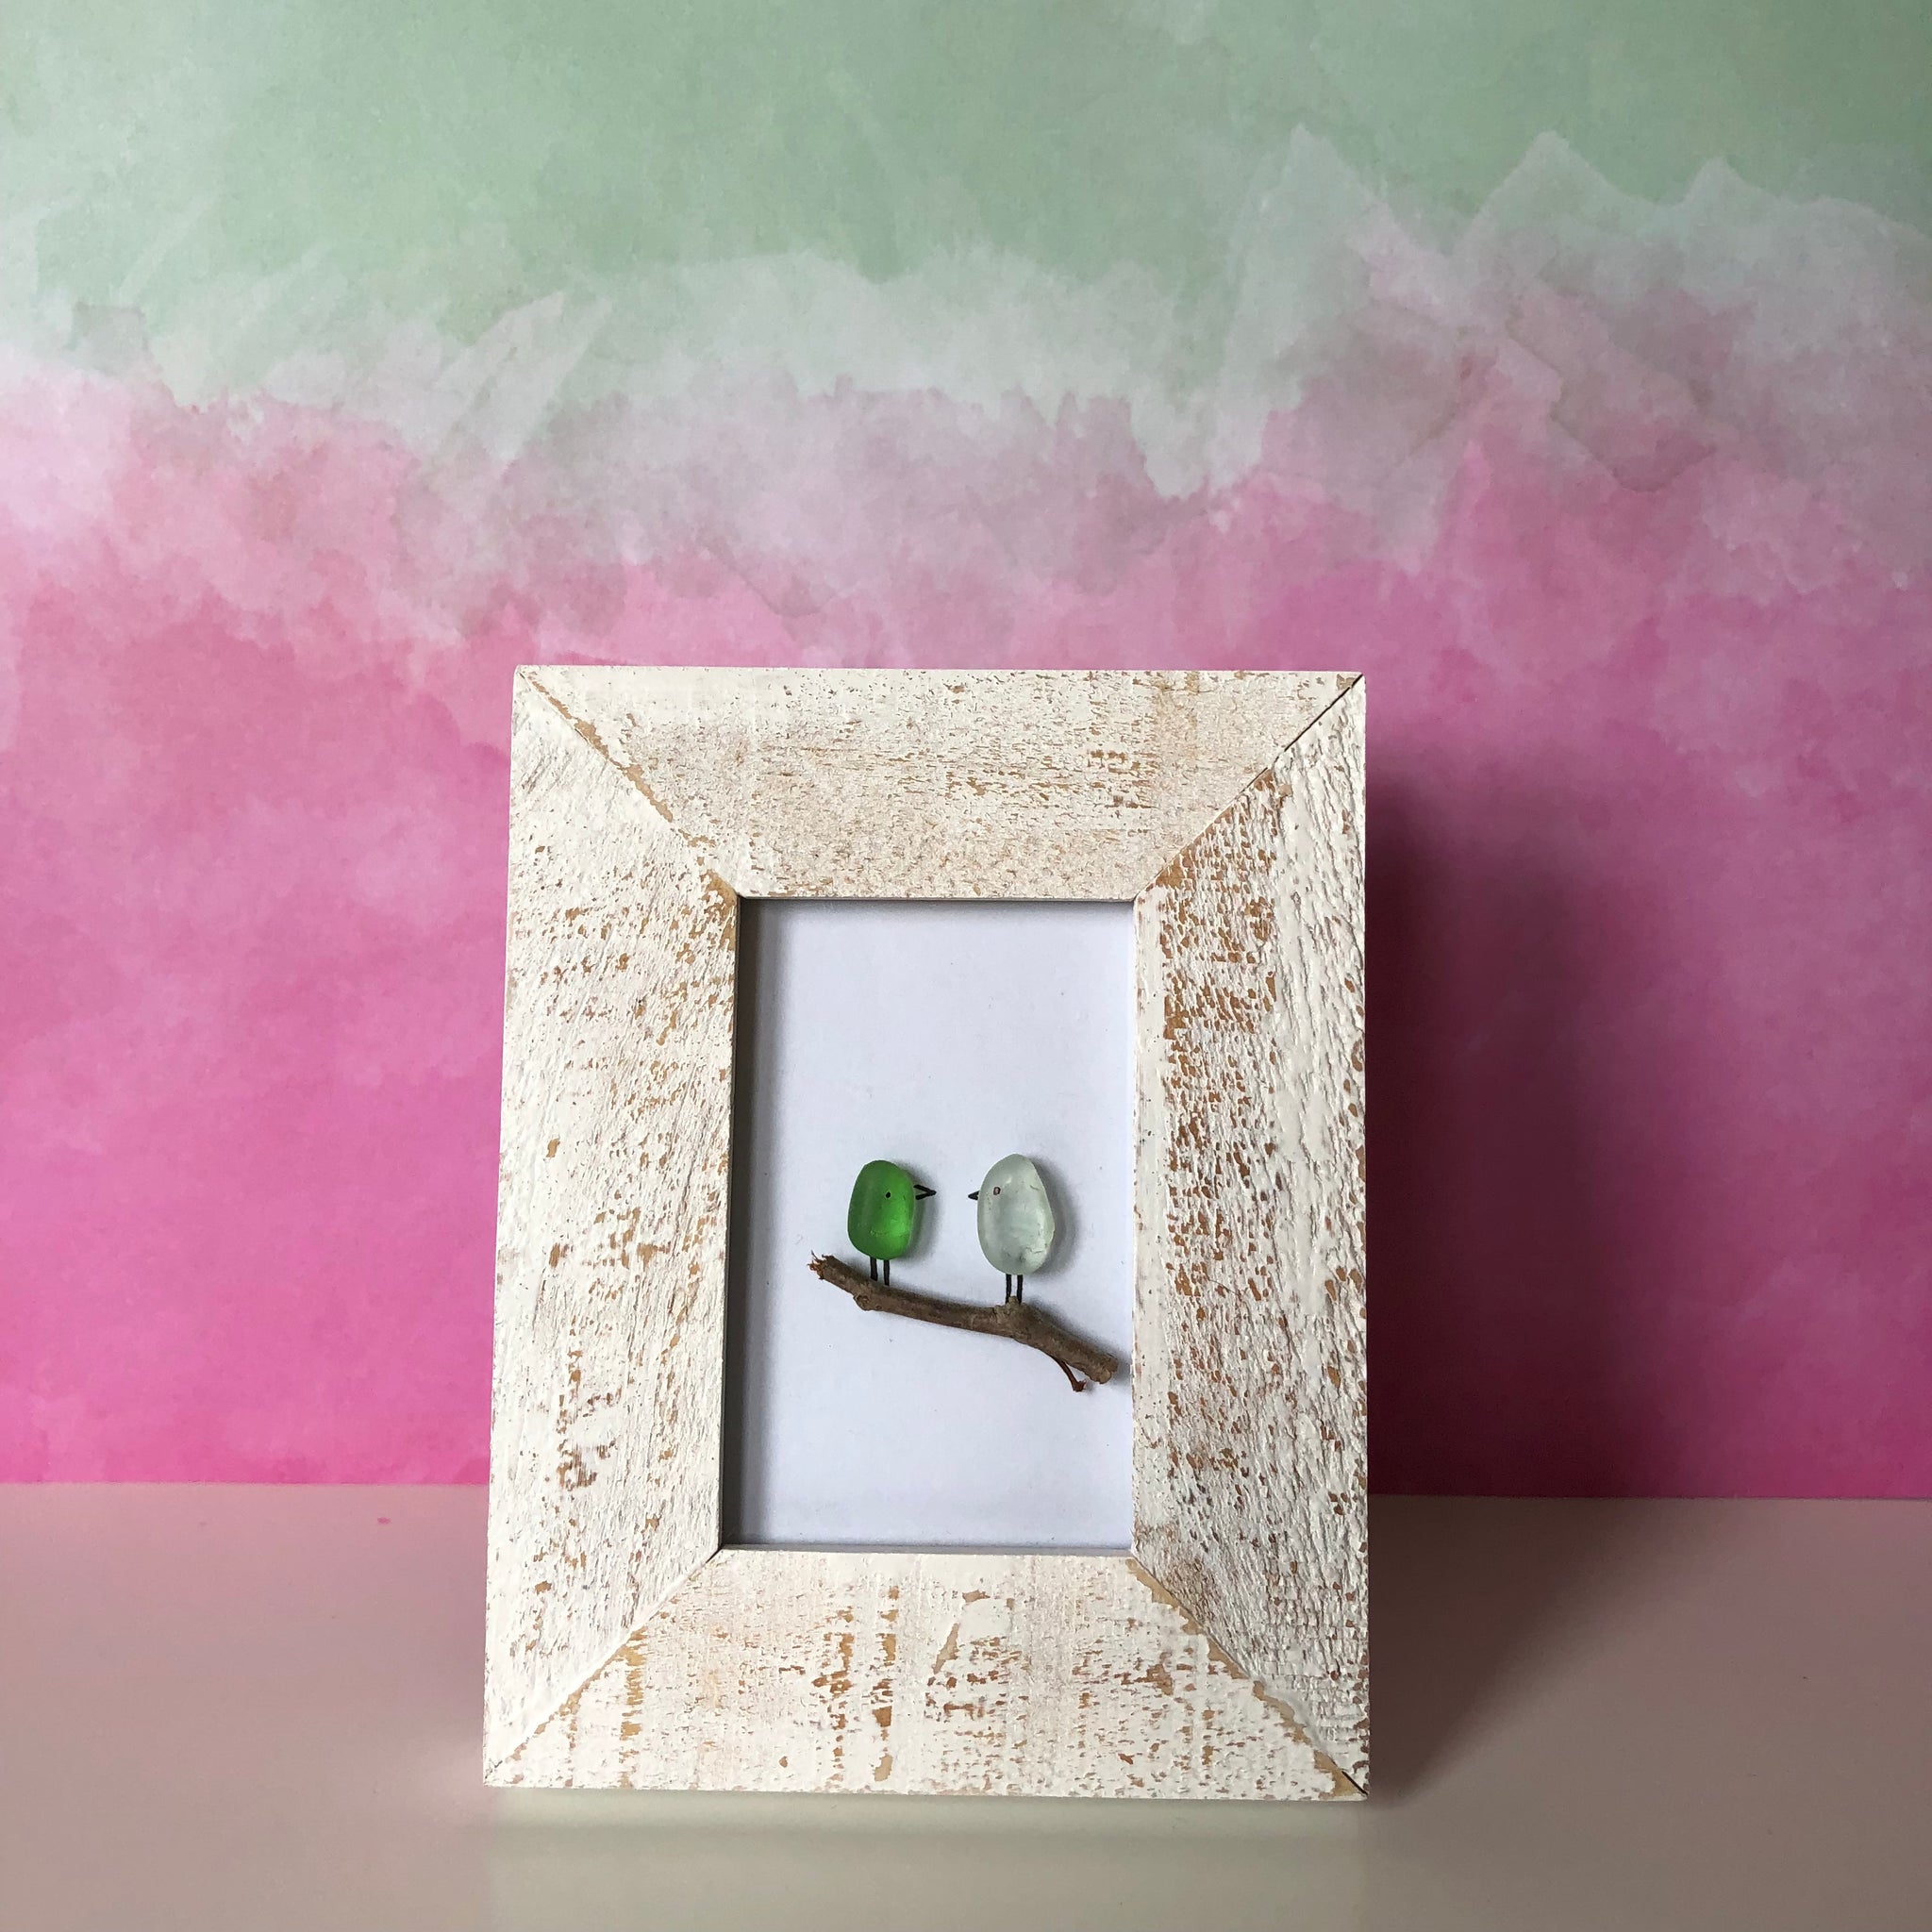 Tiny birds - Tiny Framed Seaglass Art